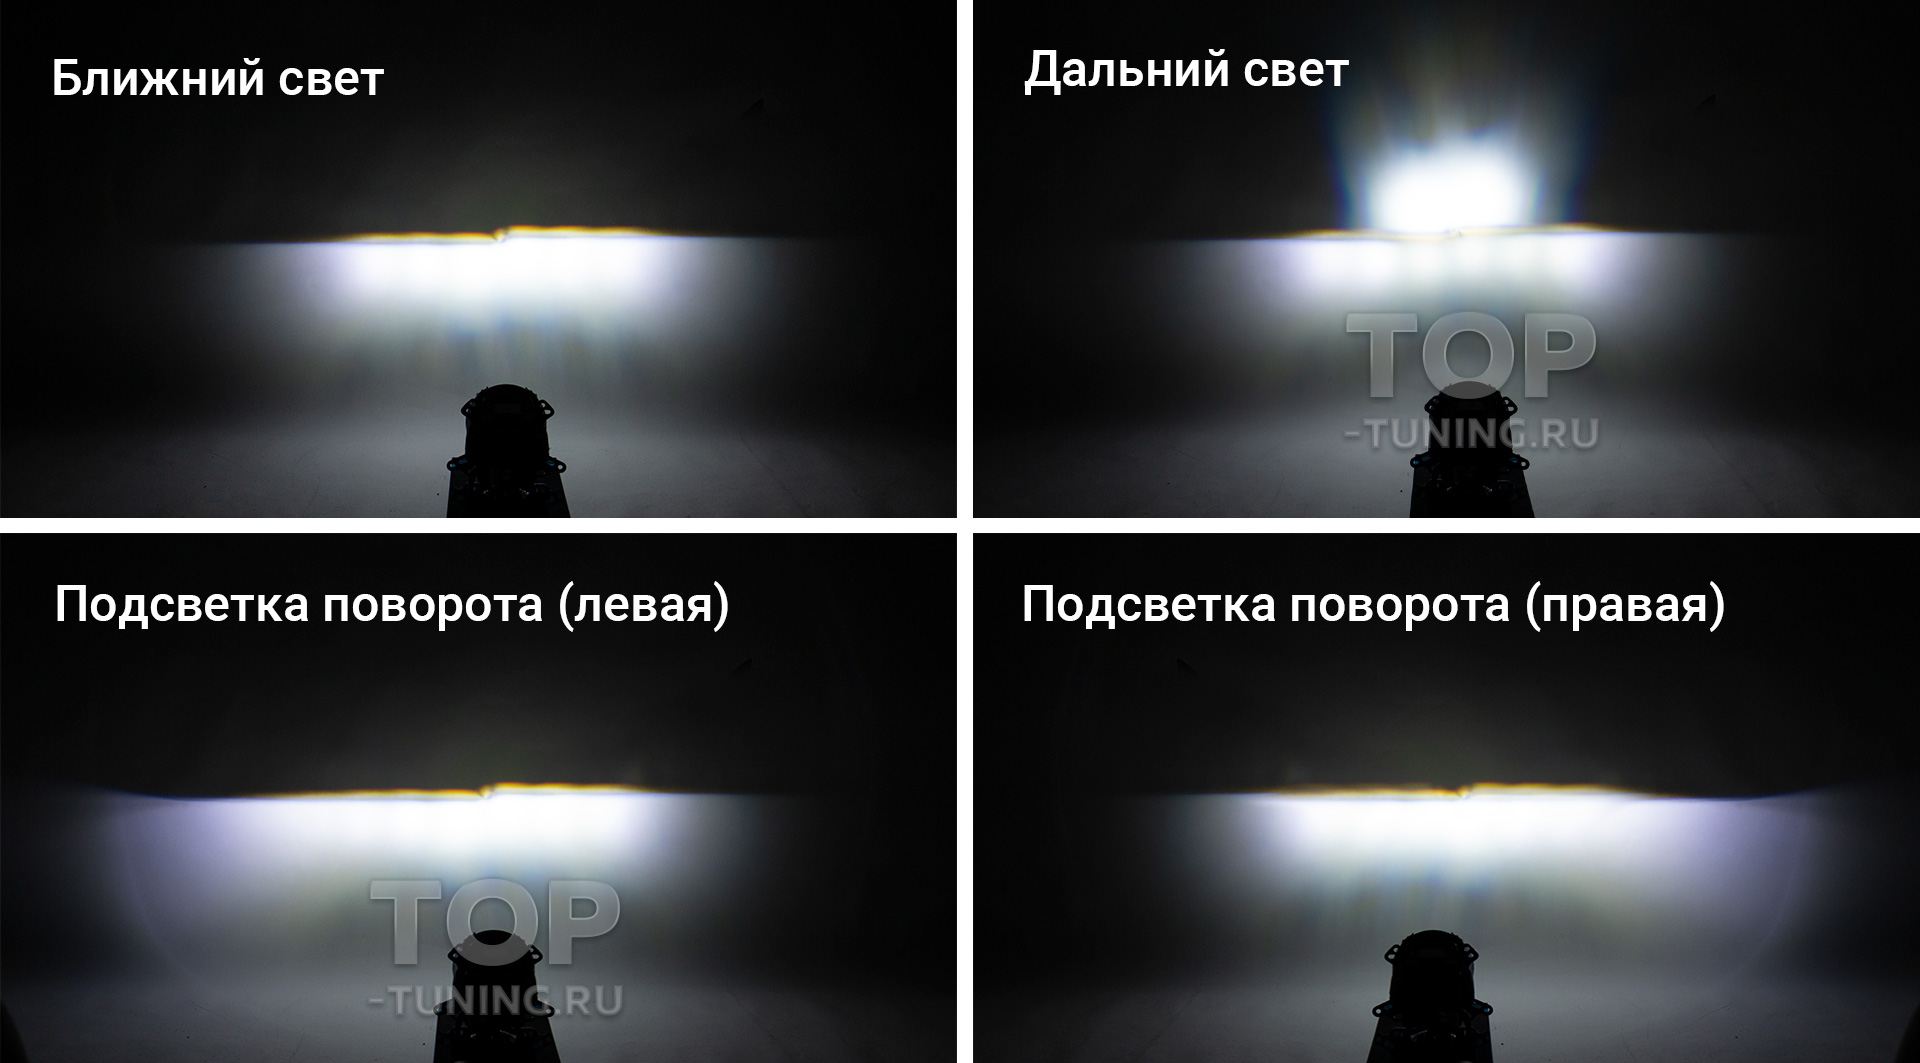 Статичная подсветка поворотов в Хендай Крета - Hyundai Creta клуб Россия